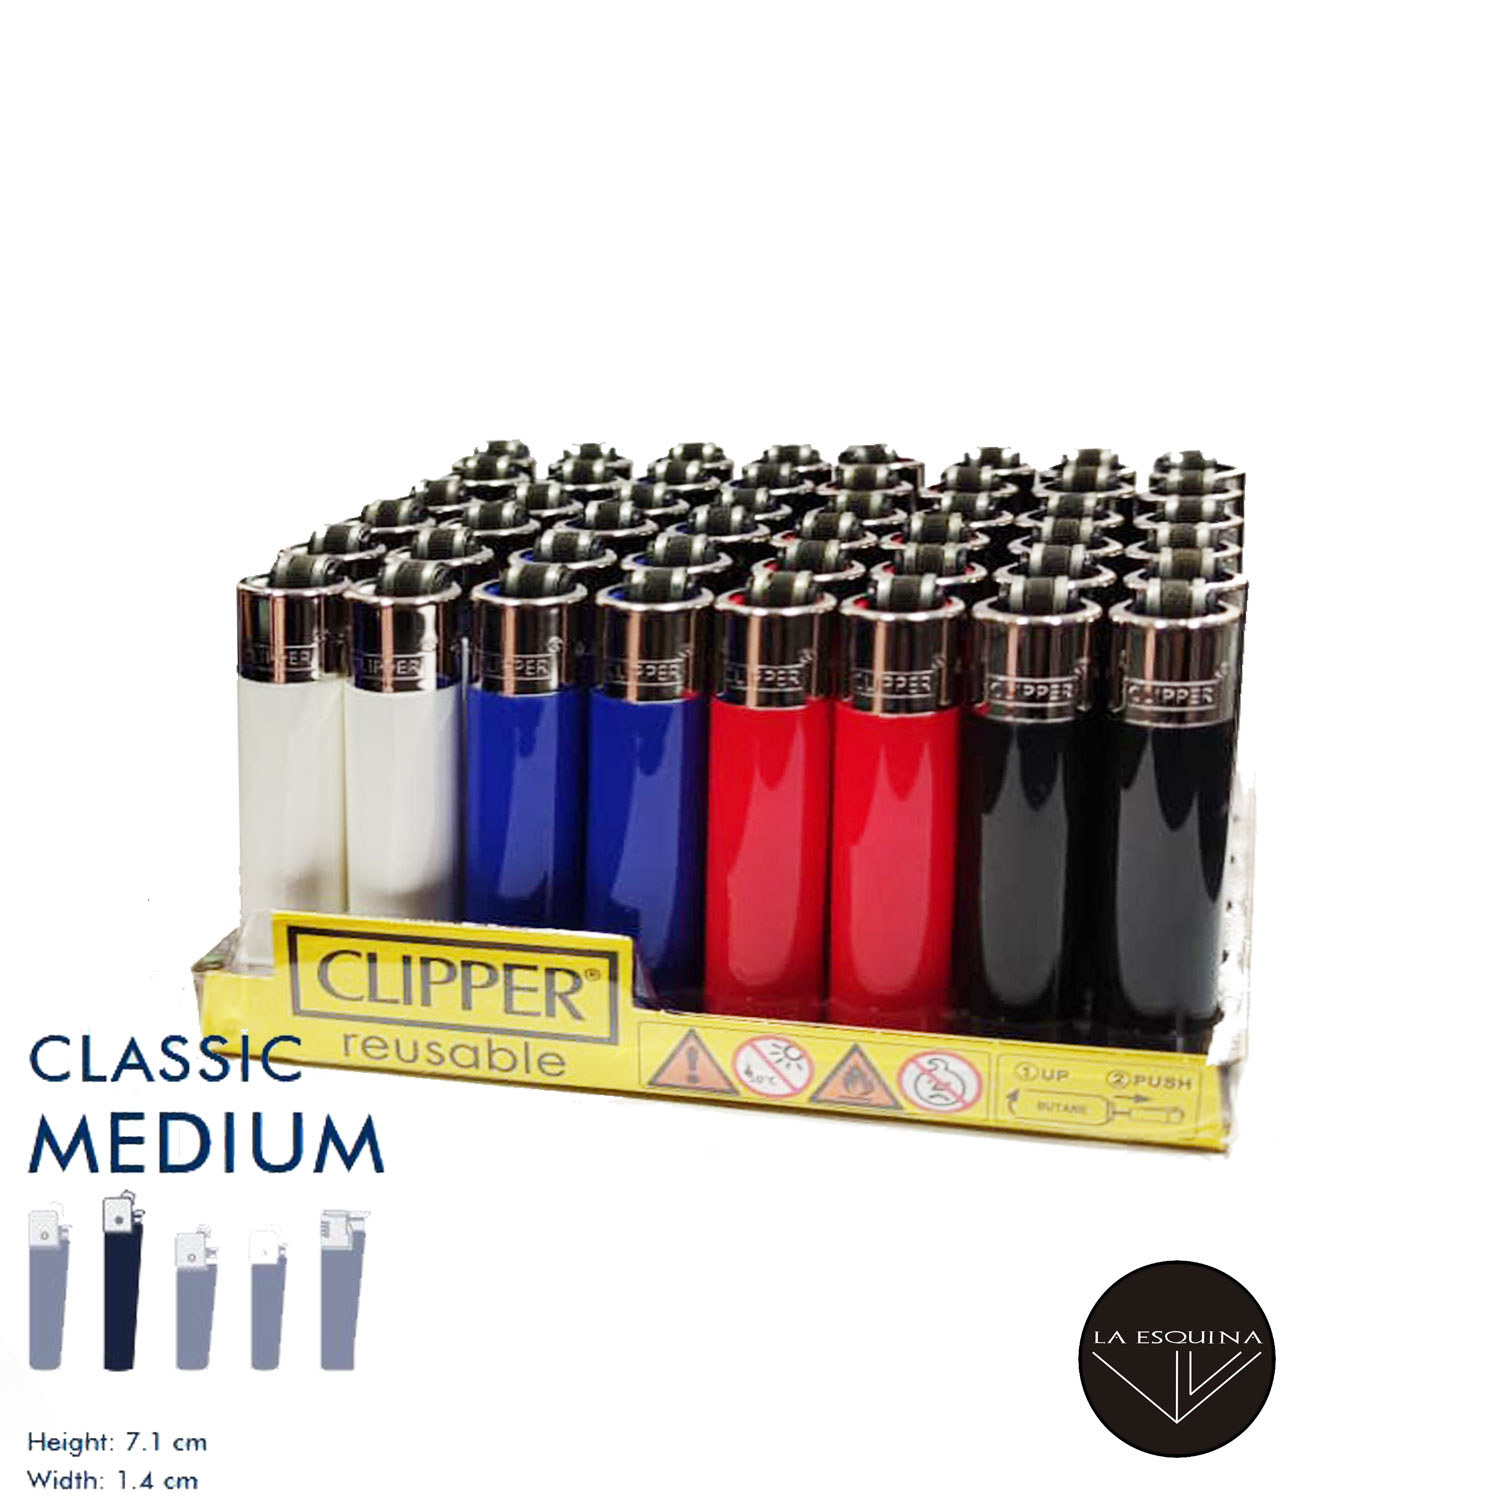 Clipper Encendedor de 48 unidades, surtido sólido, encendedor seguro de  butano Clipper - Encendedores recargables en varios colores - Vela